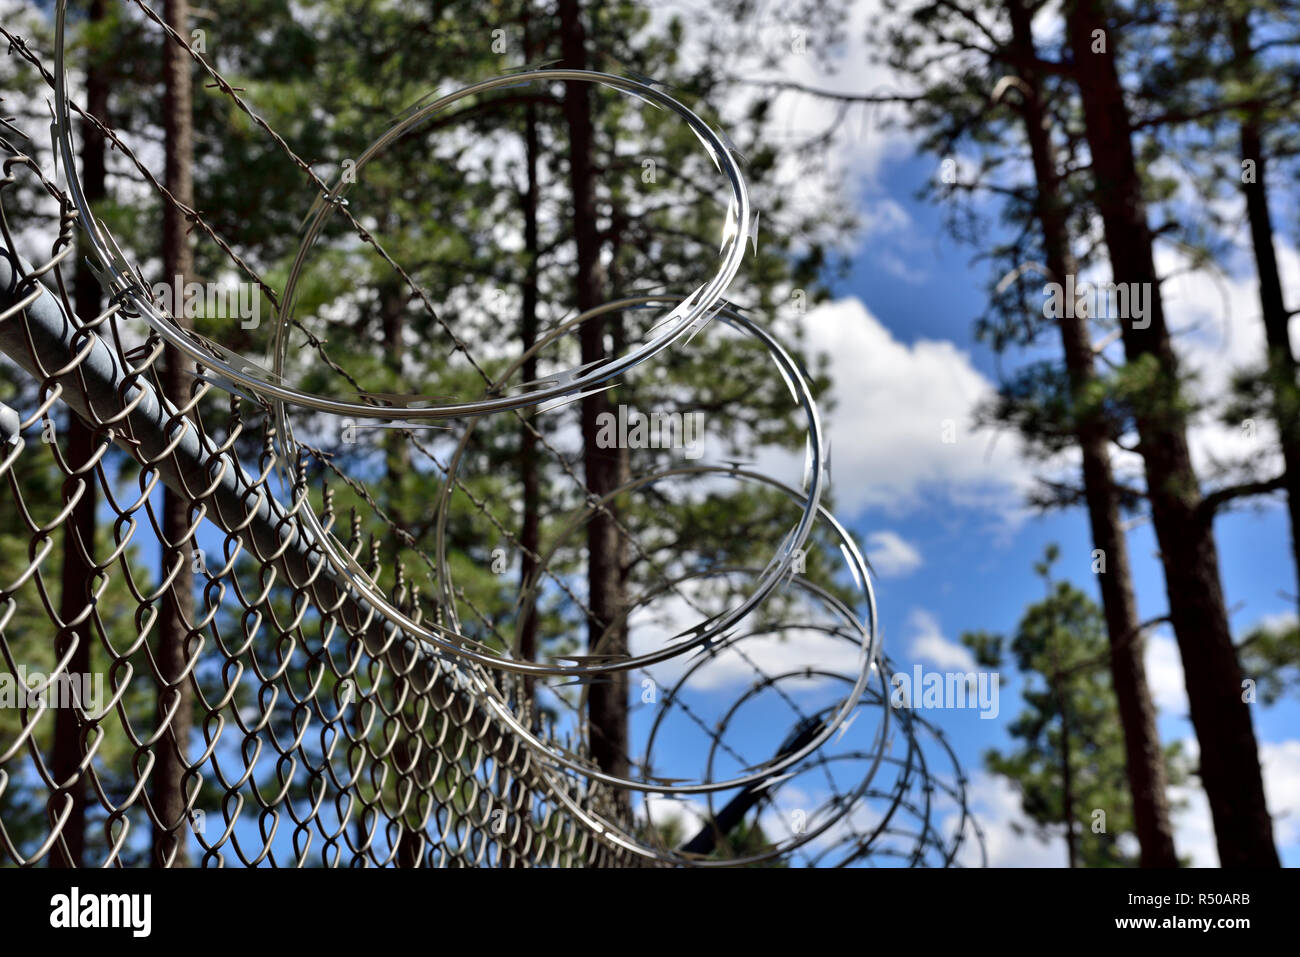 Razor et barbelés au-dessus de haute sécurité clôtures métalliques dans une forêt de pins Banque D'Images